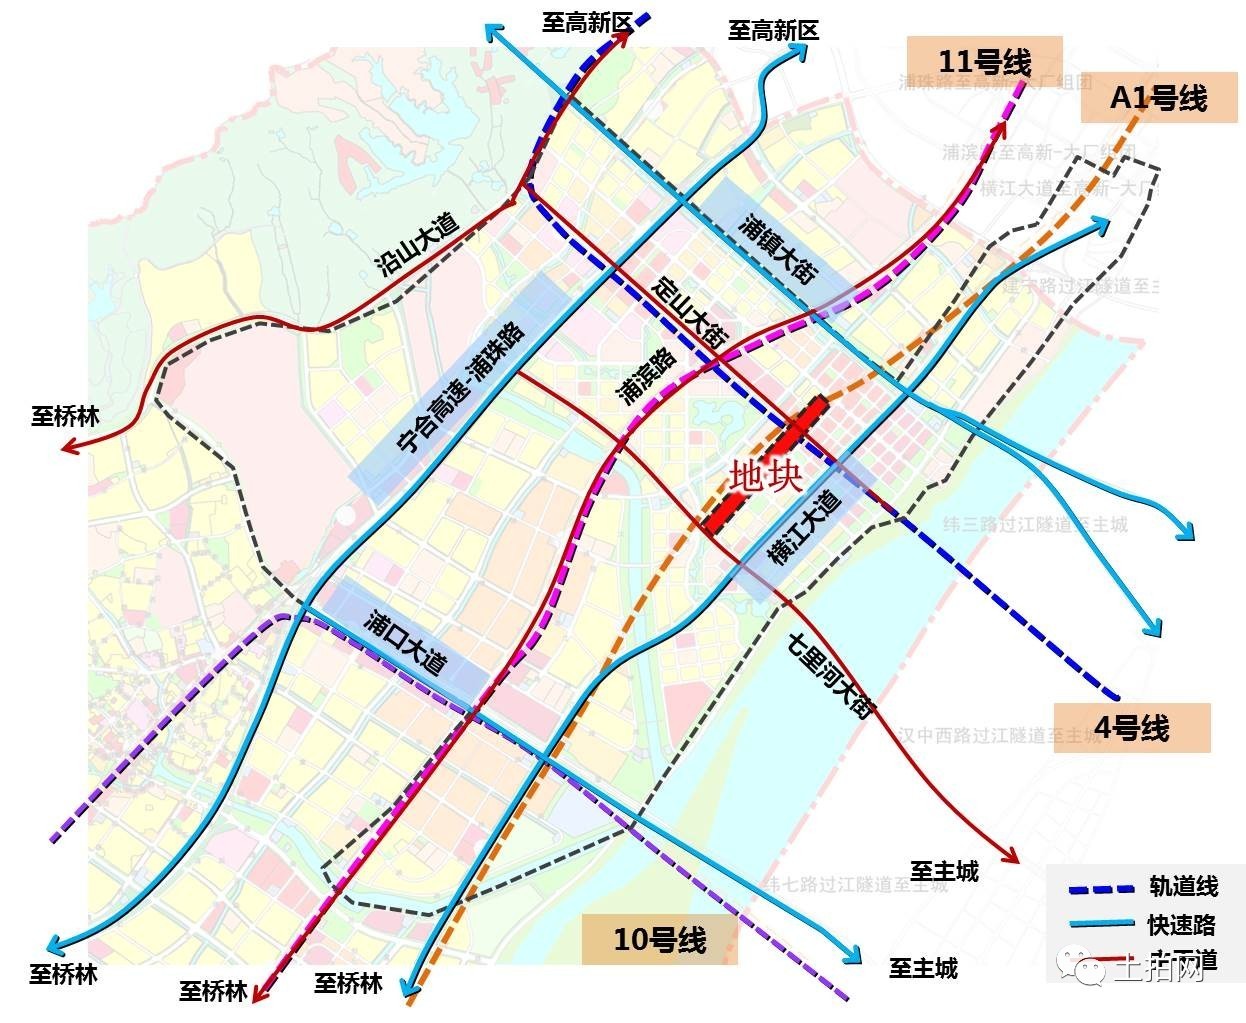 南京江北新区区划调整 核心区今年唯一拟上市地块潜力升级